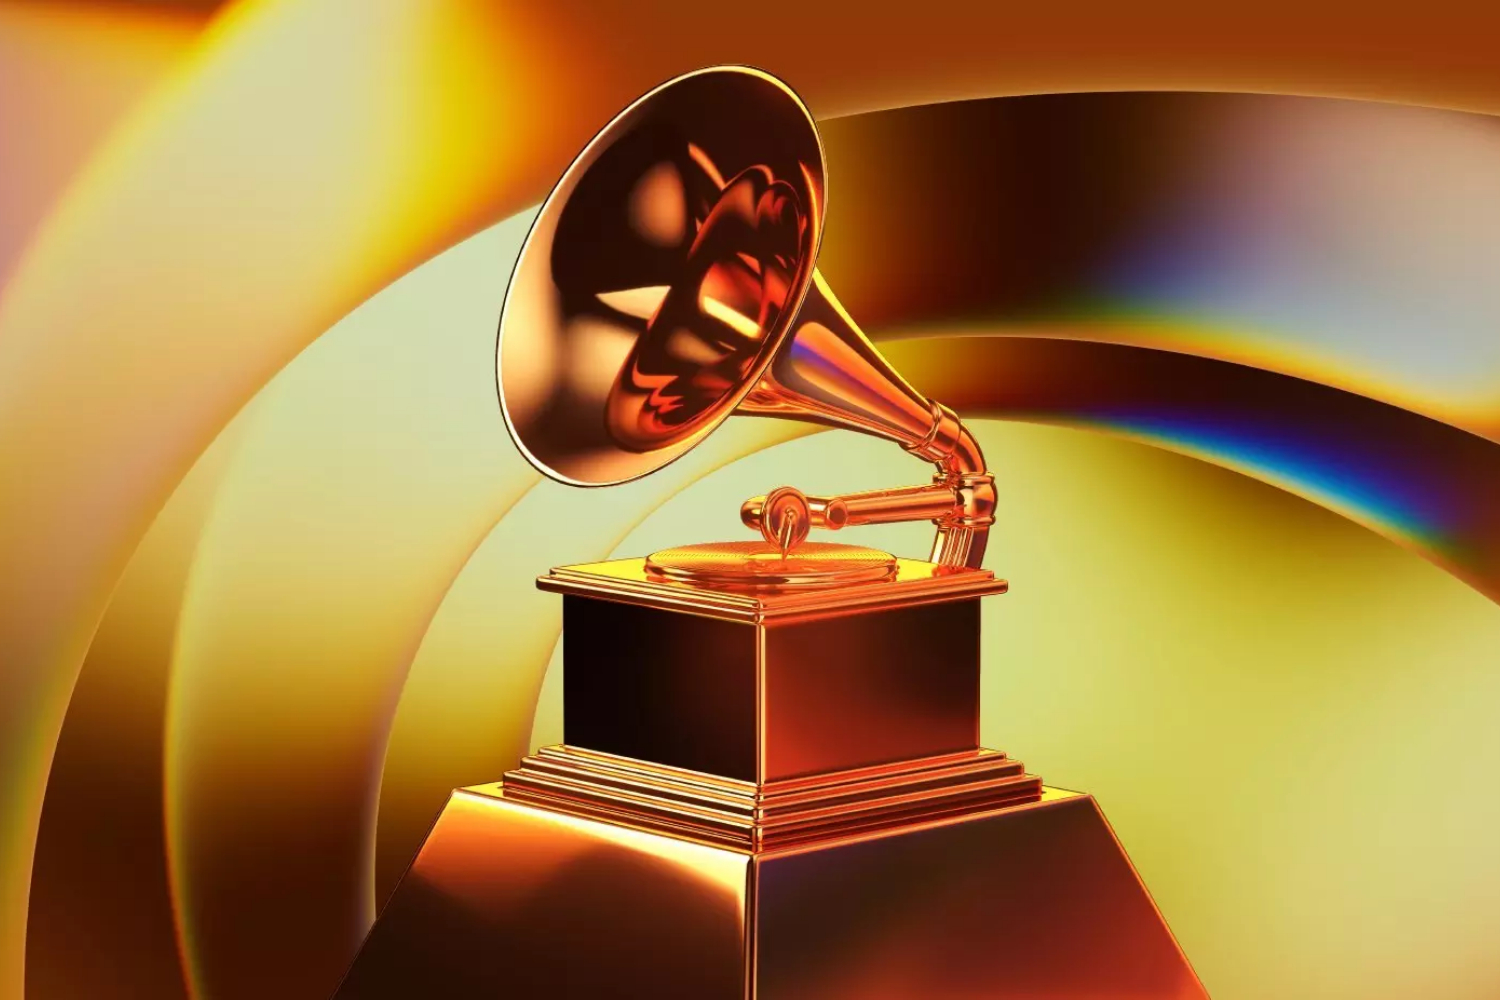 Quanto ganham os artistas vencedores do Grammy? Forbes